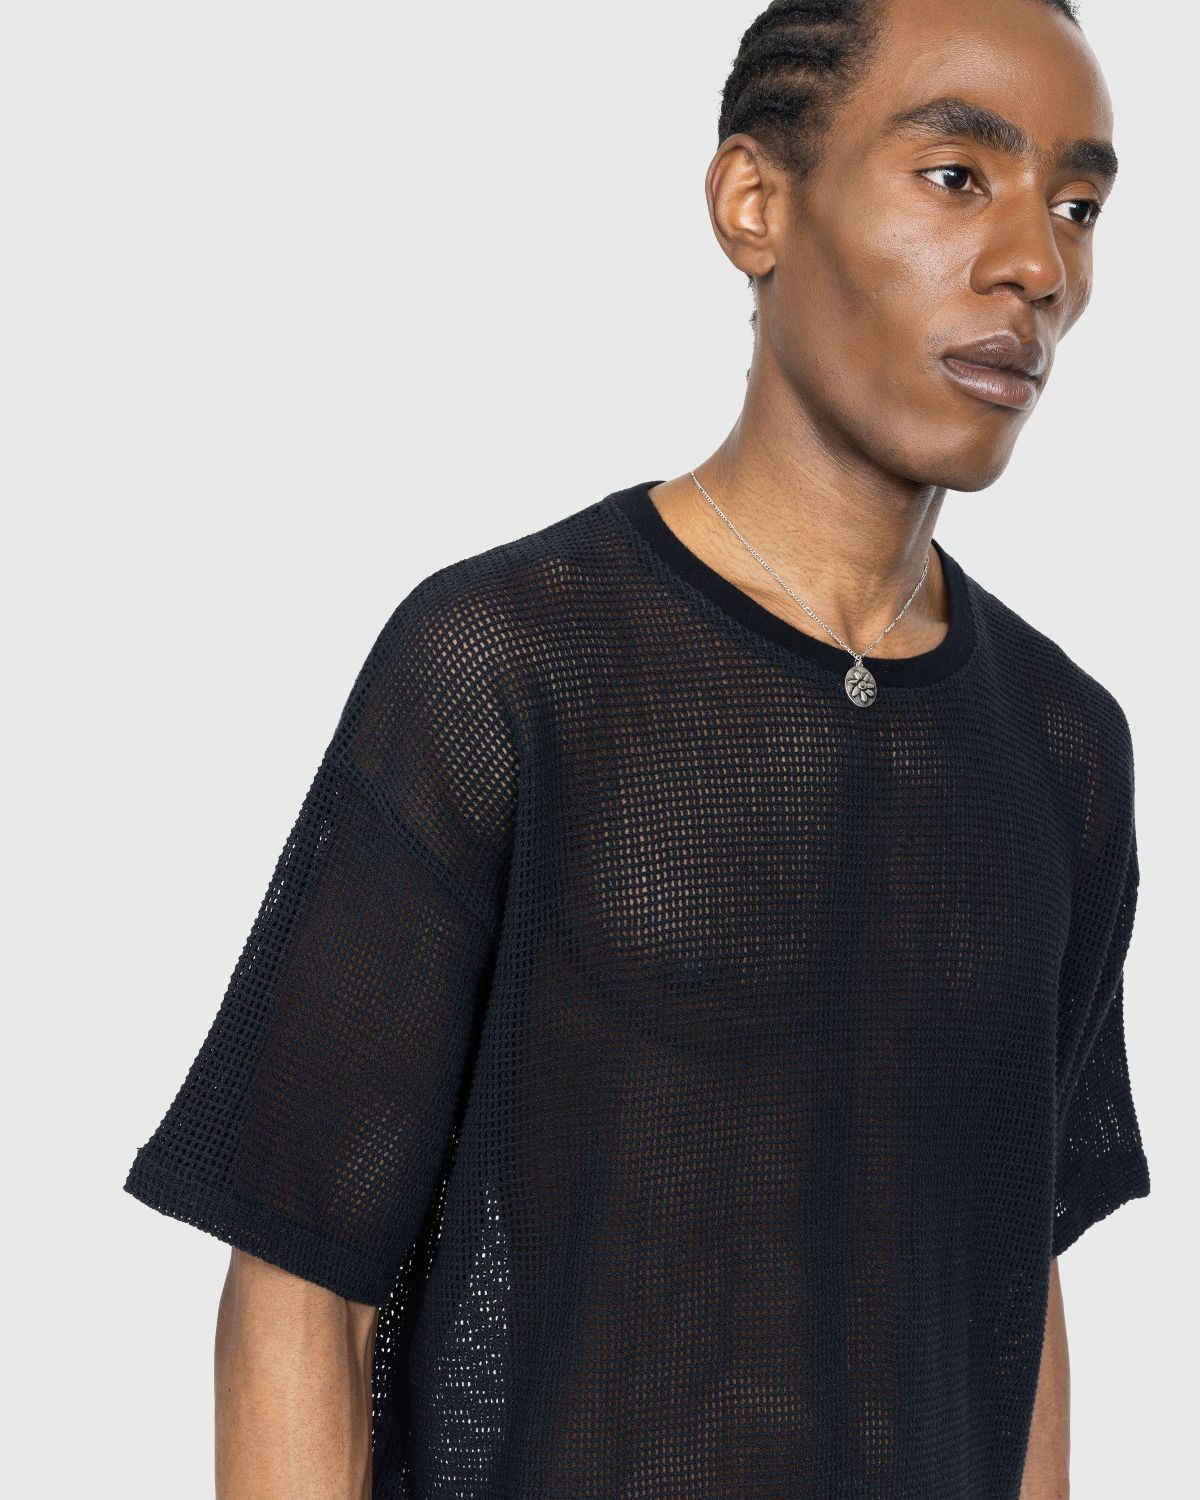 Highsnobiety – Cotton Mesh Knit T-Shirt Black | Highsnobiety Shop